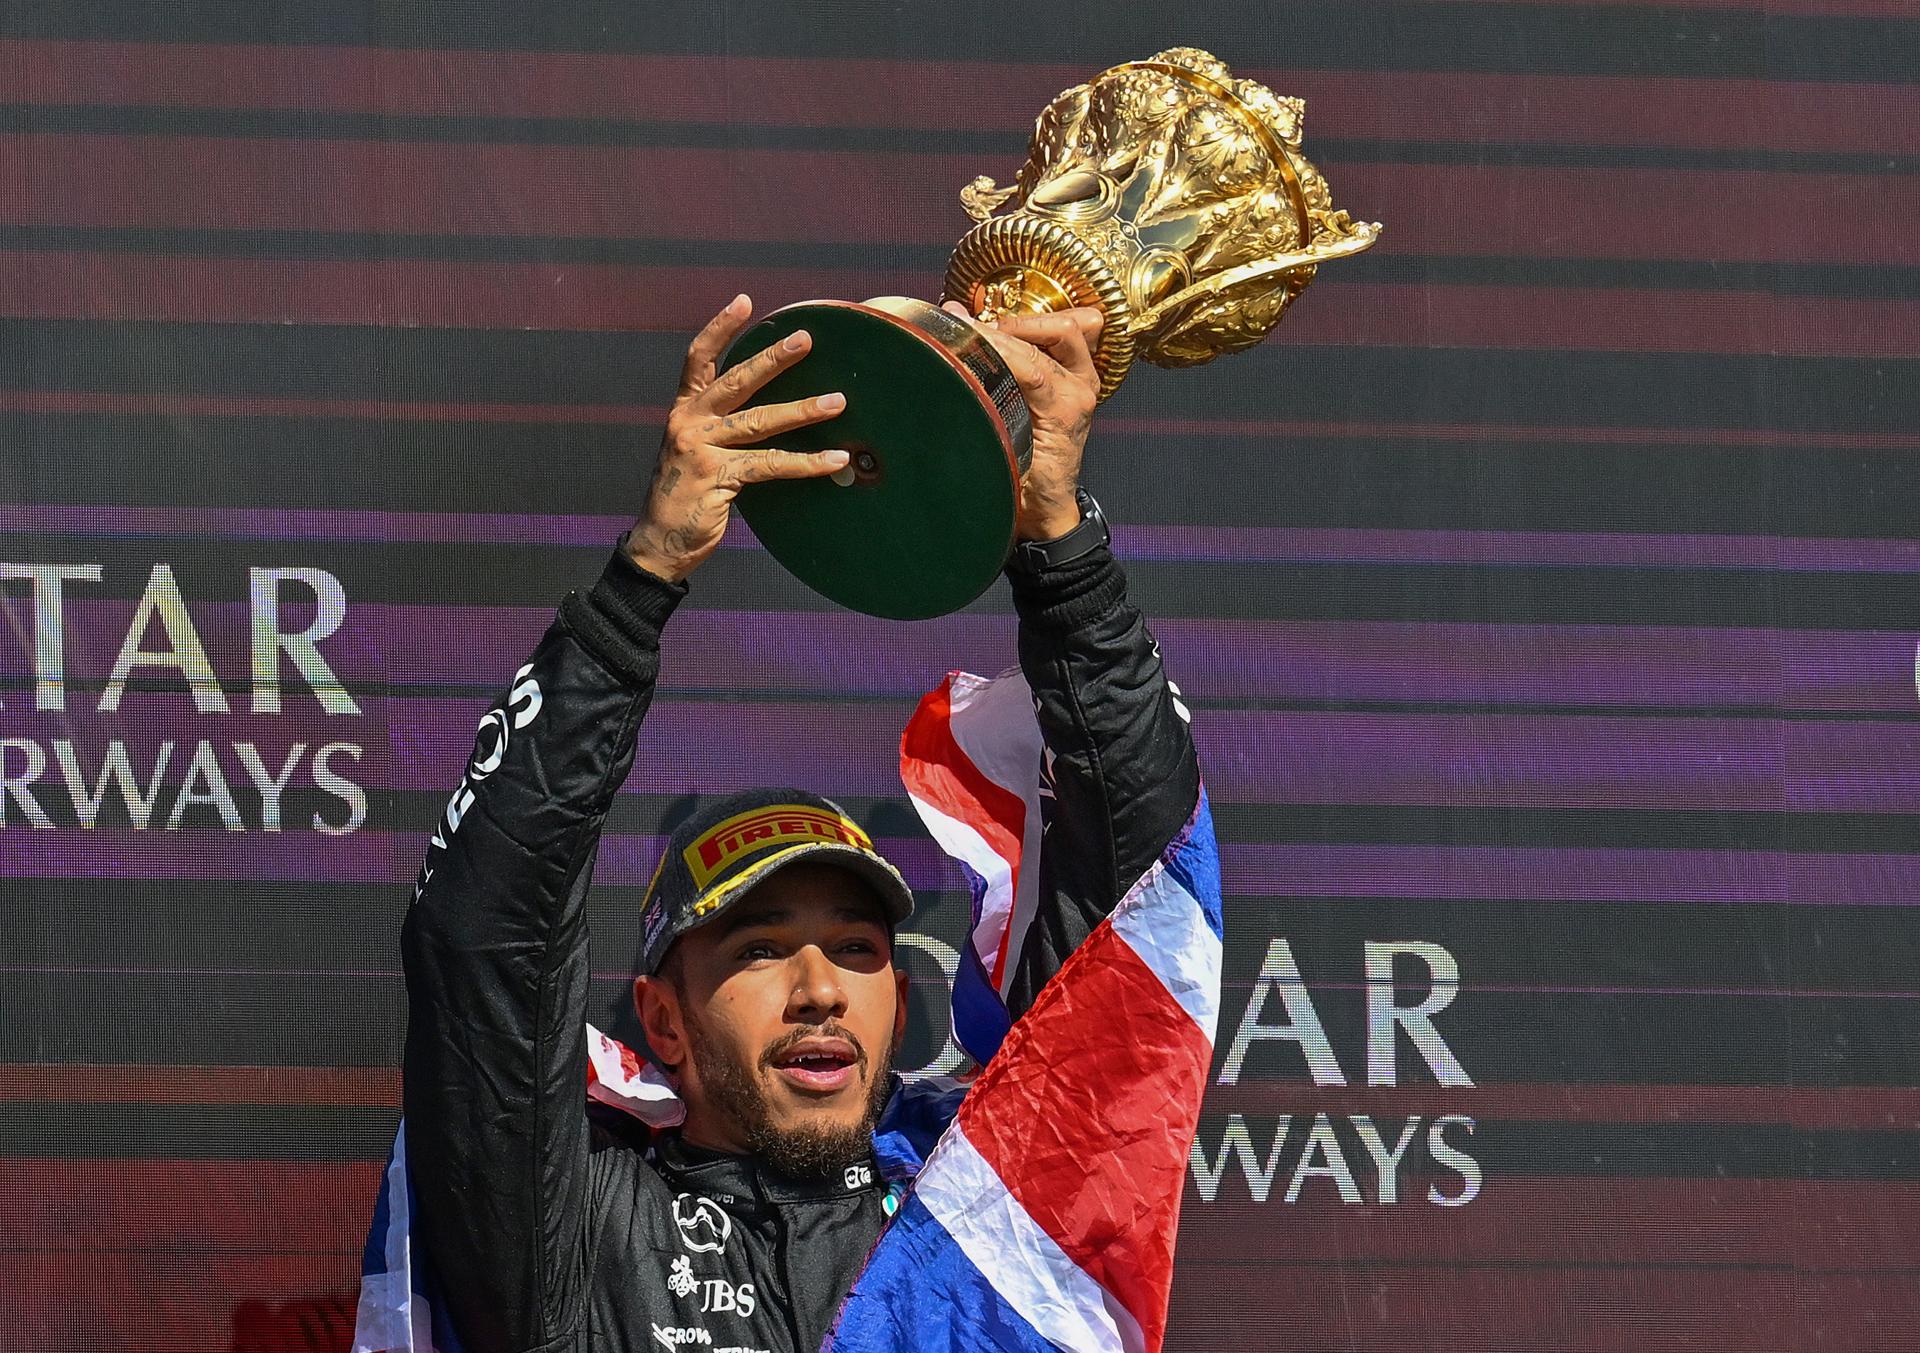 Lewis Hamilton ganó en Silverstone y elevó su propio récord histórico de triunfos